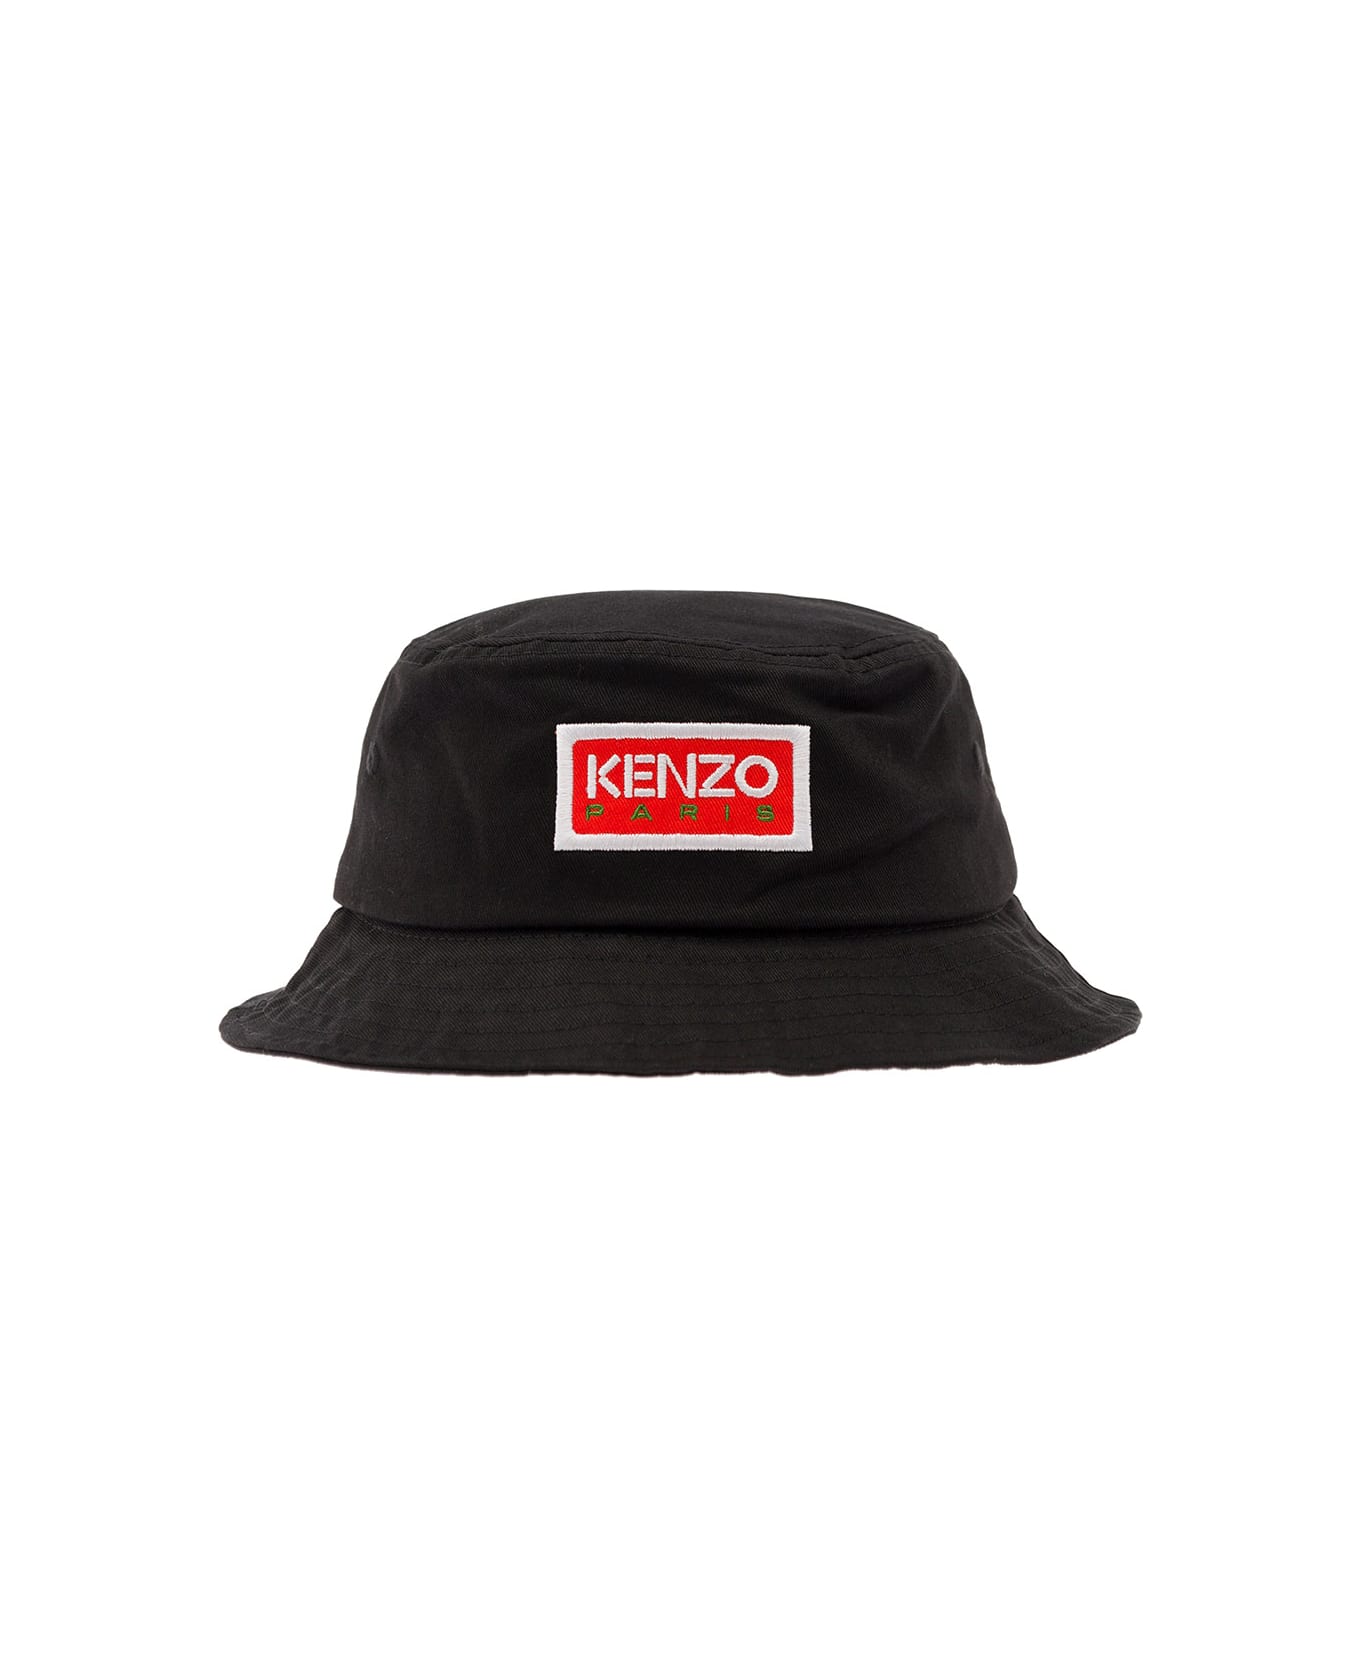 Kenzo Bucket Hat - Black